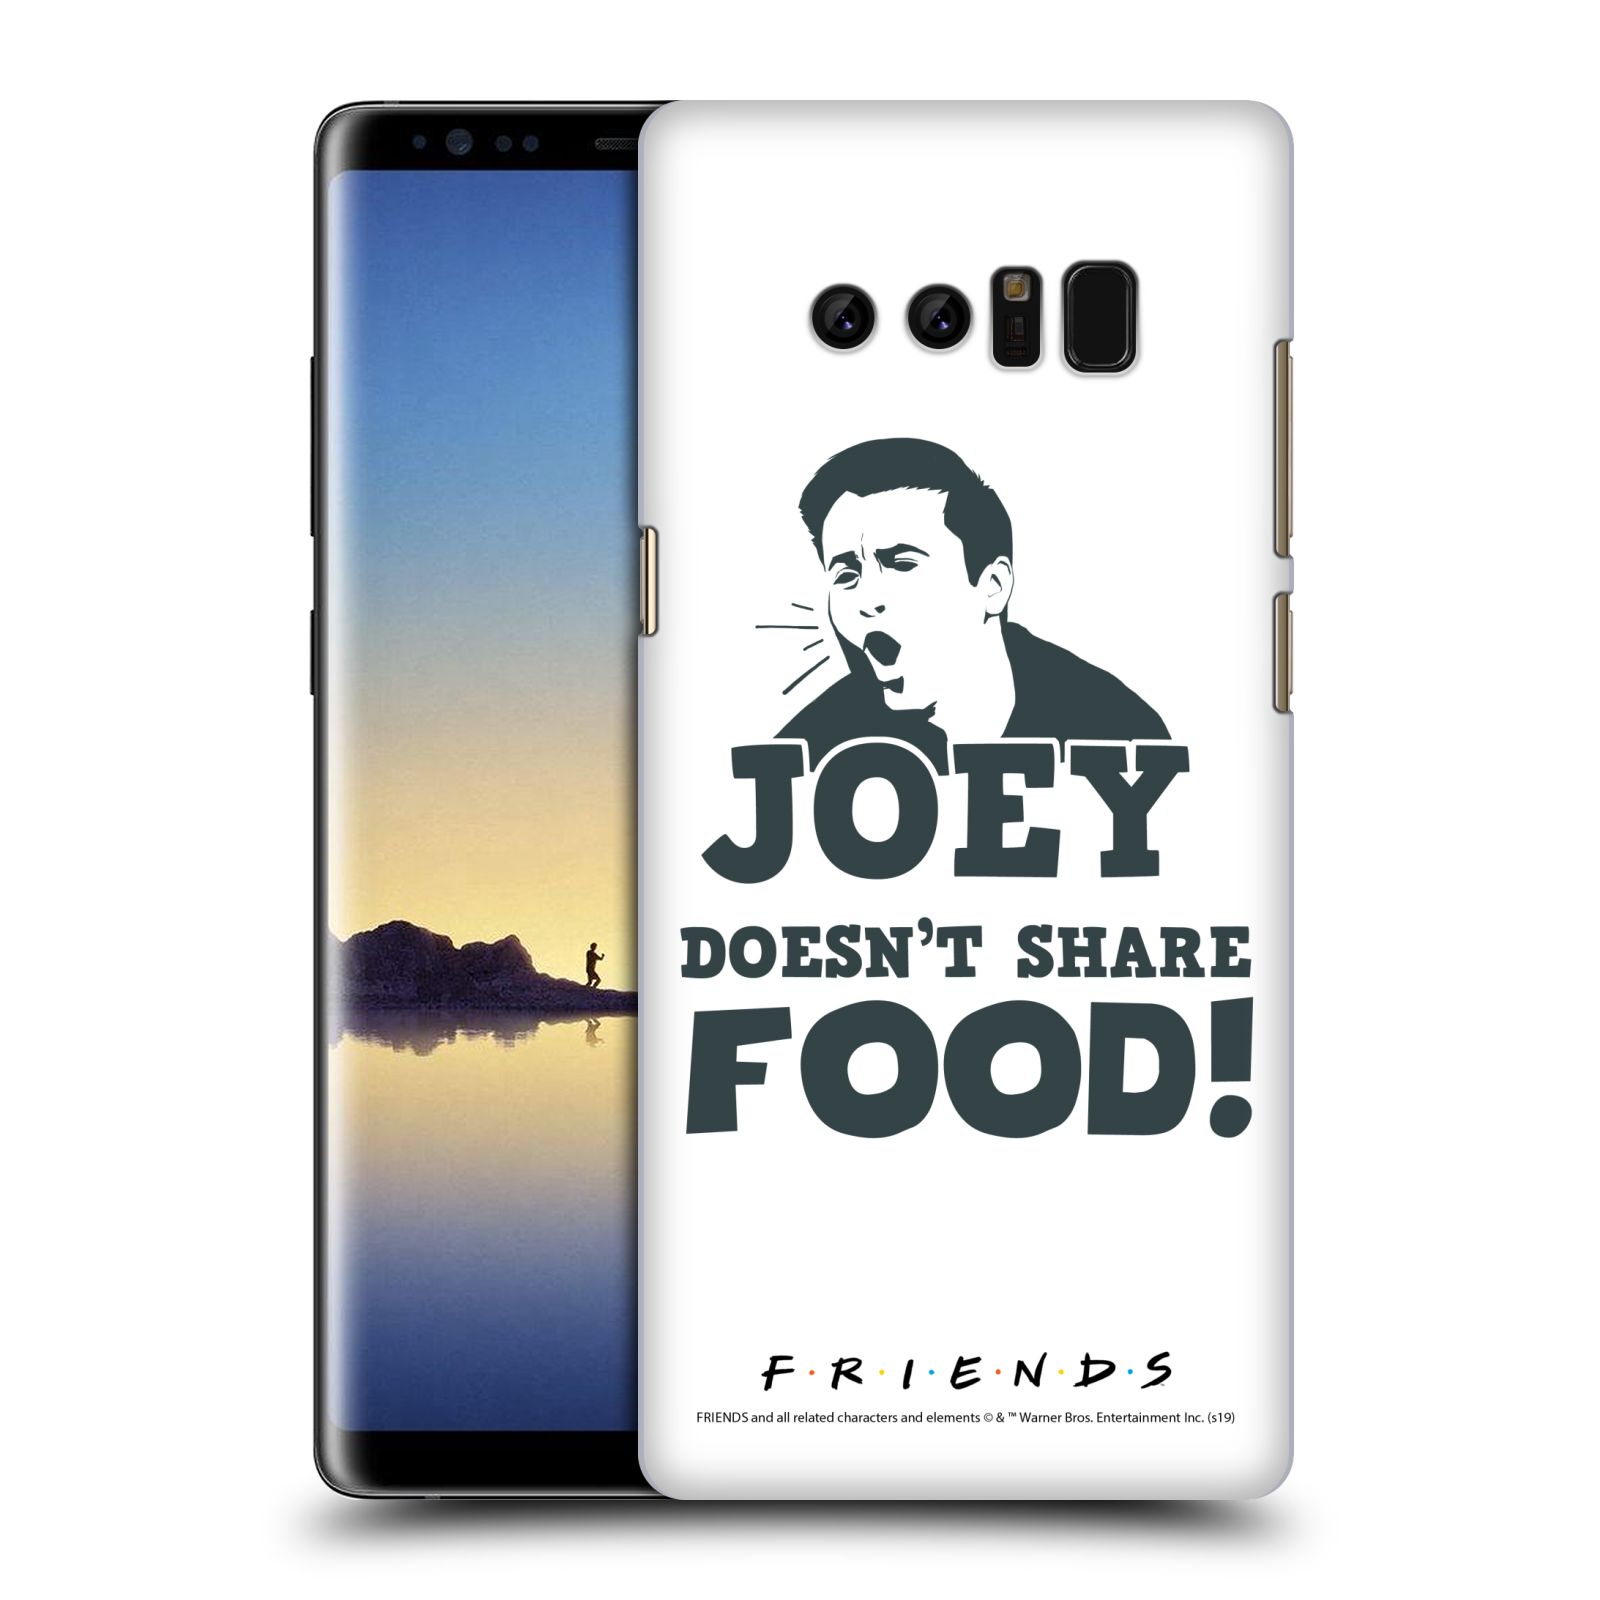 Pouzdro na mobil Samsung Galaxy Note 8 - HEAD CASE - Seriál Přátelé - Joey se o jídlo nedělí